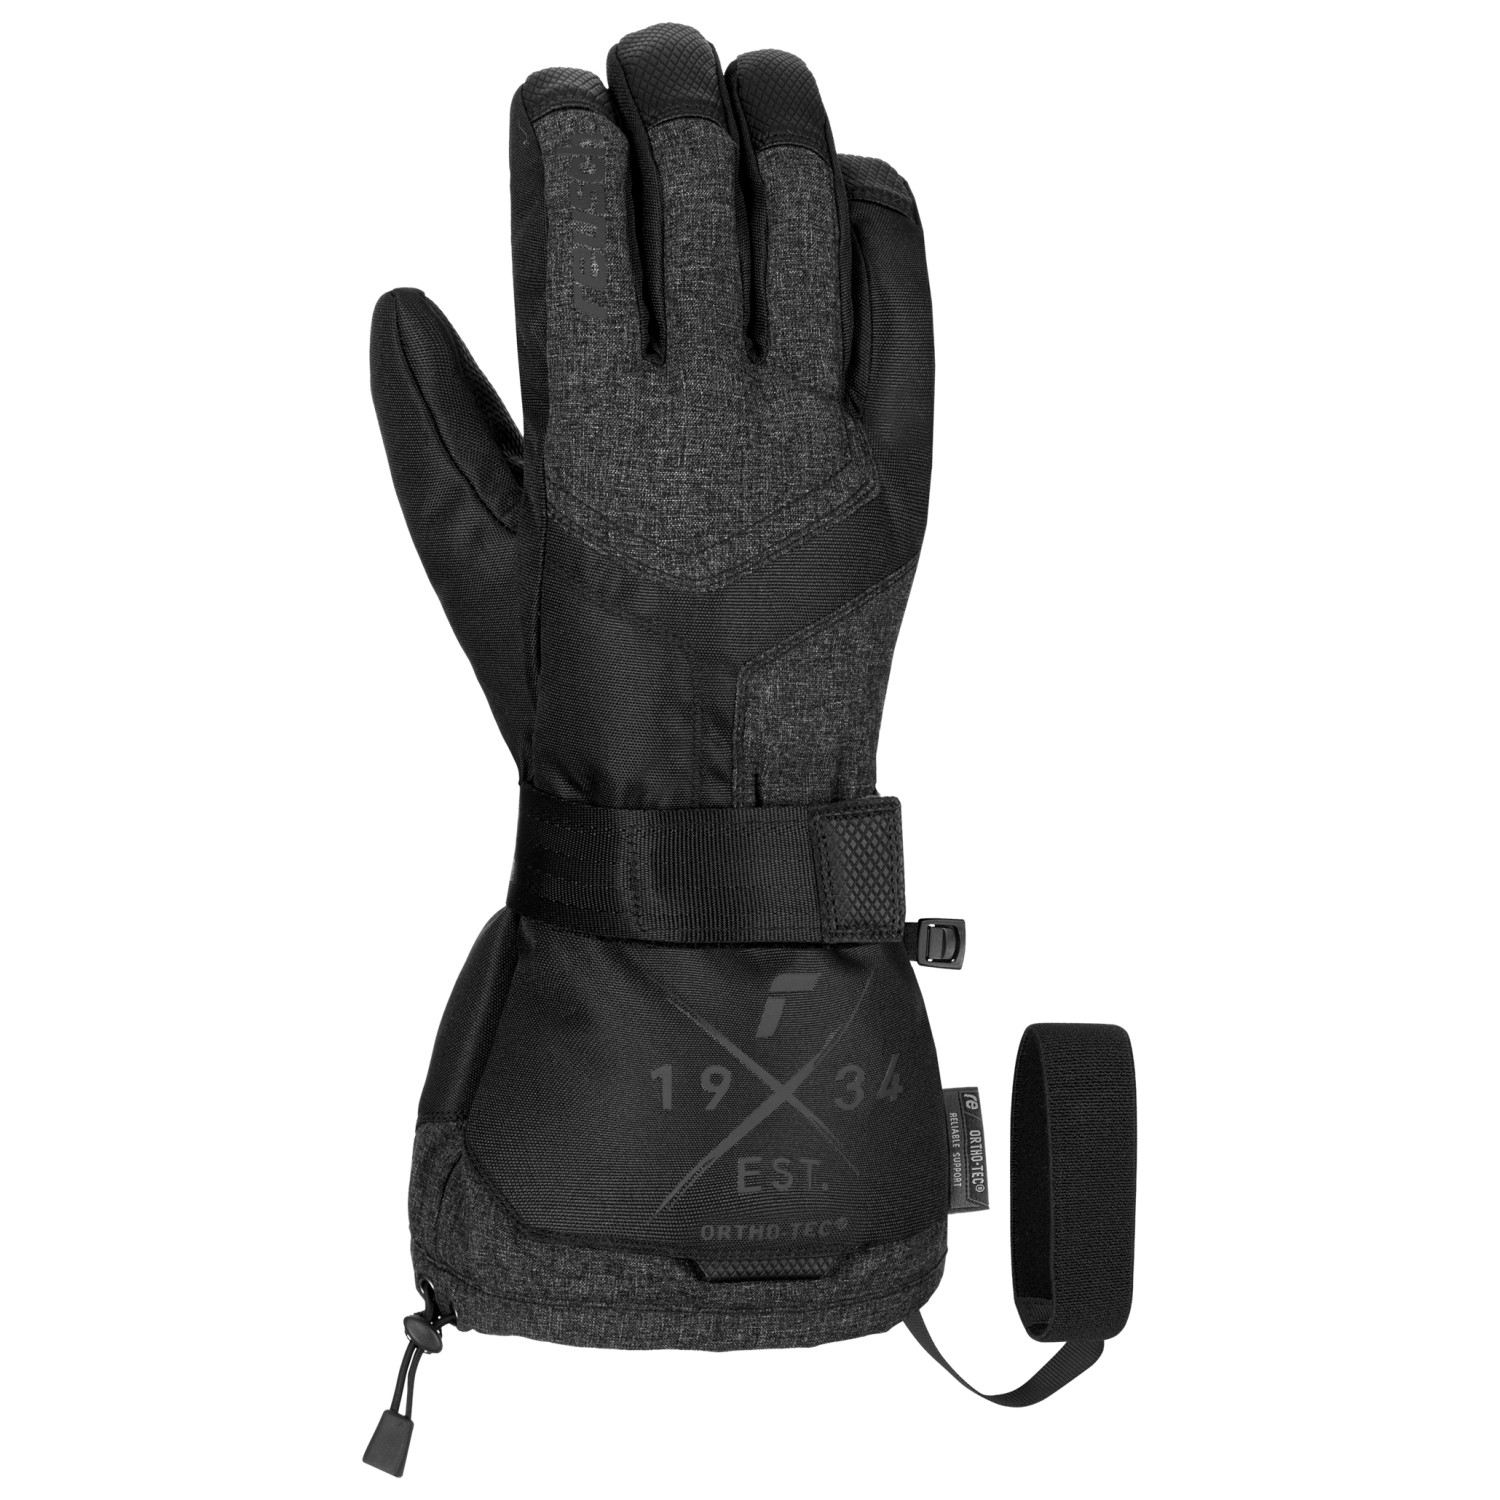 Reusch - Doubletake R-TEX XT - Handschuhe